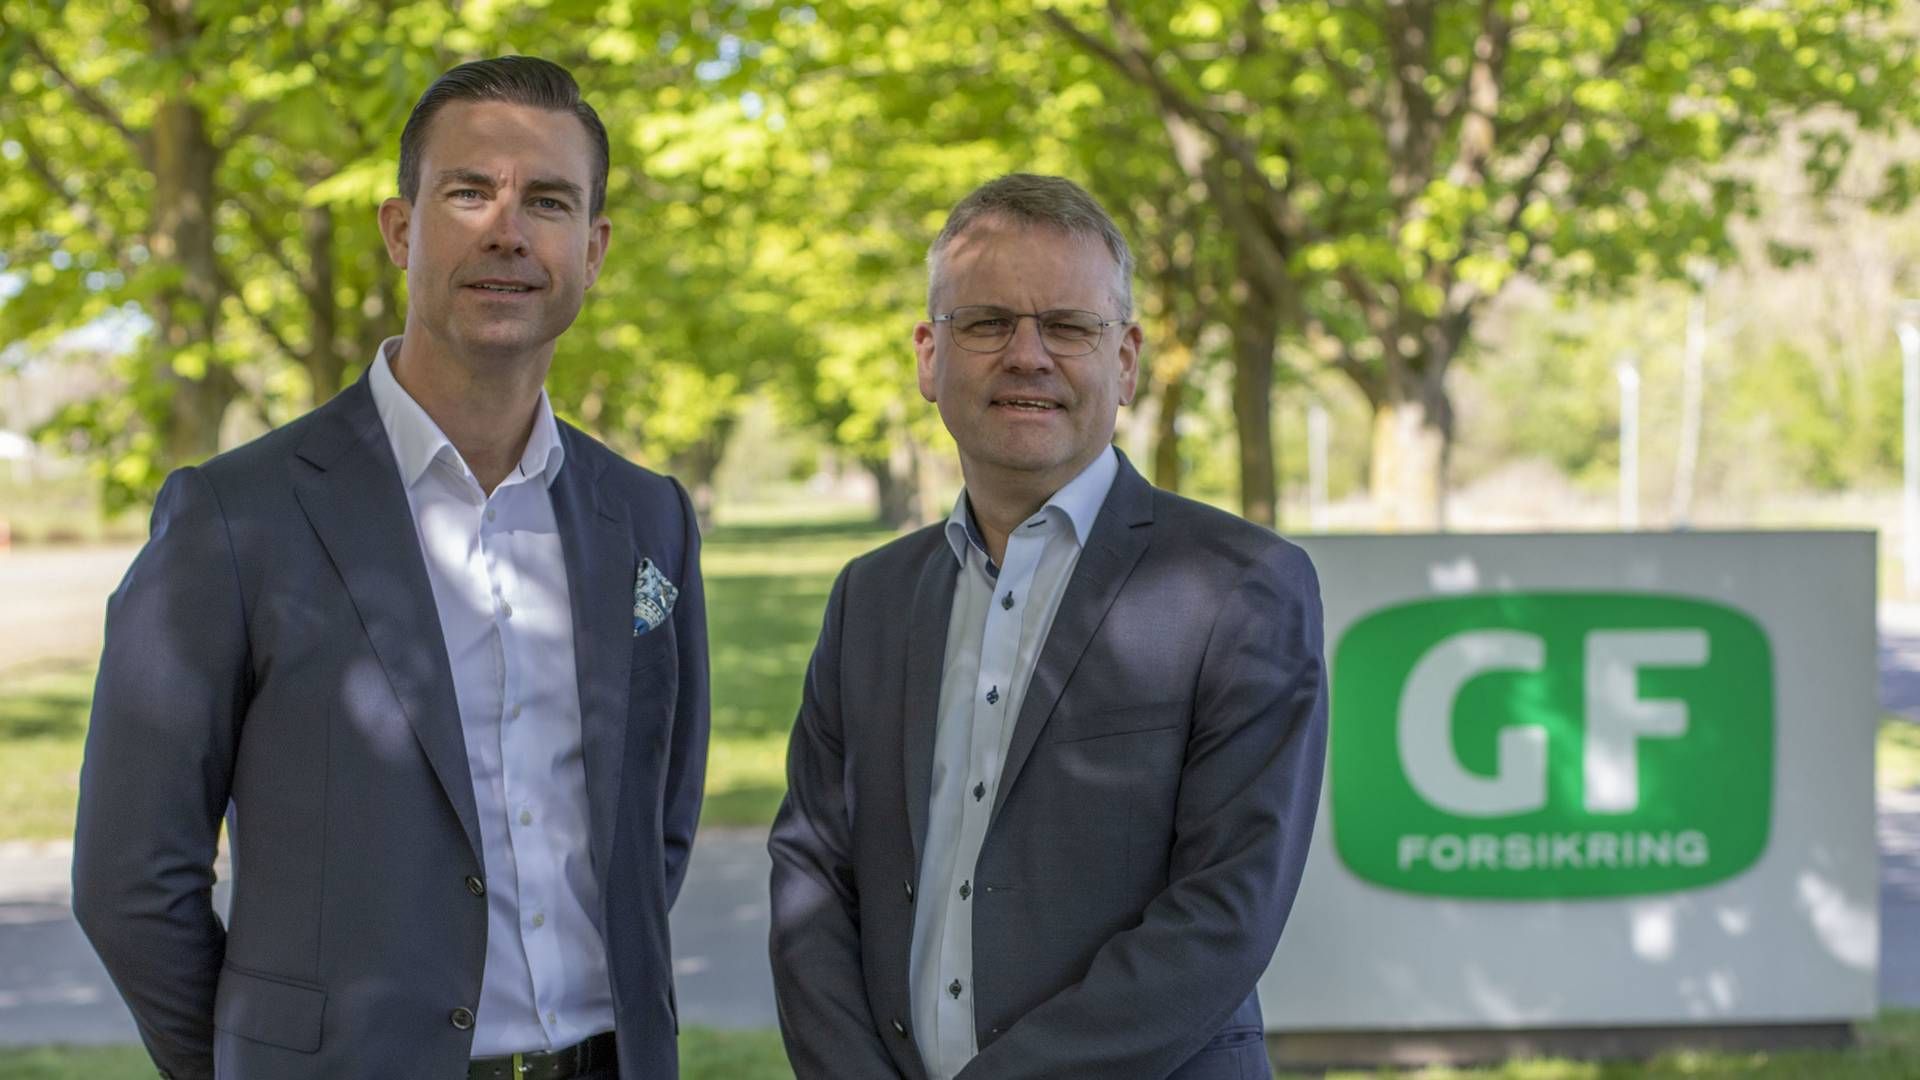 Mark Palmberg, ny adm. direktør i GF Forsikring (til venstre) og Torben B. Pedersen, bestyrelsesformand i GF Forsikring (til højre). | Foto: GF Forsikring